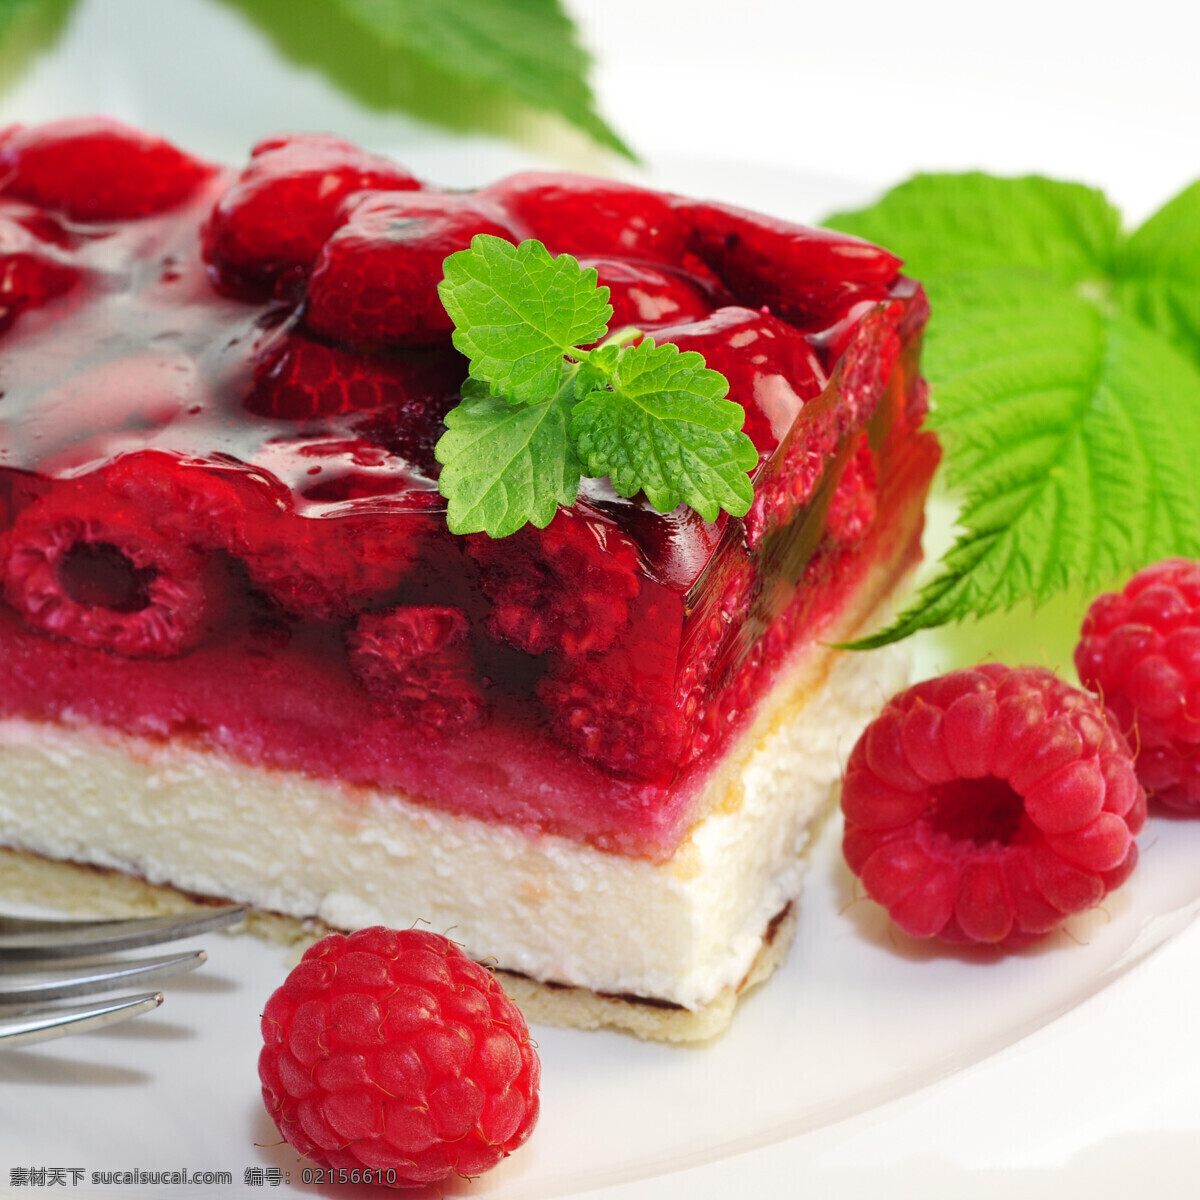 红色树莓蛋糕 红色 树莓 蛋糕 食物 美食 其他类别 餐饮美食 白色